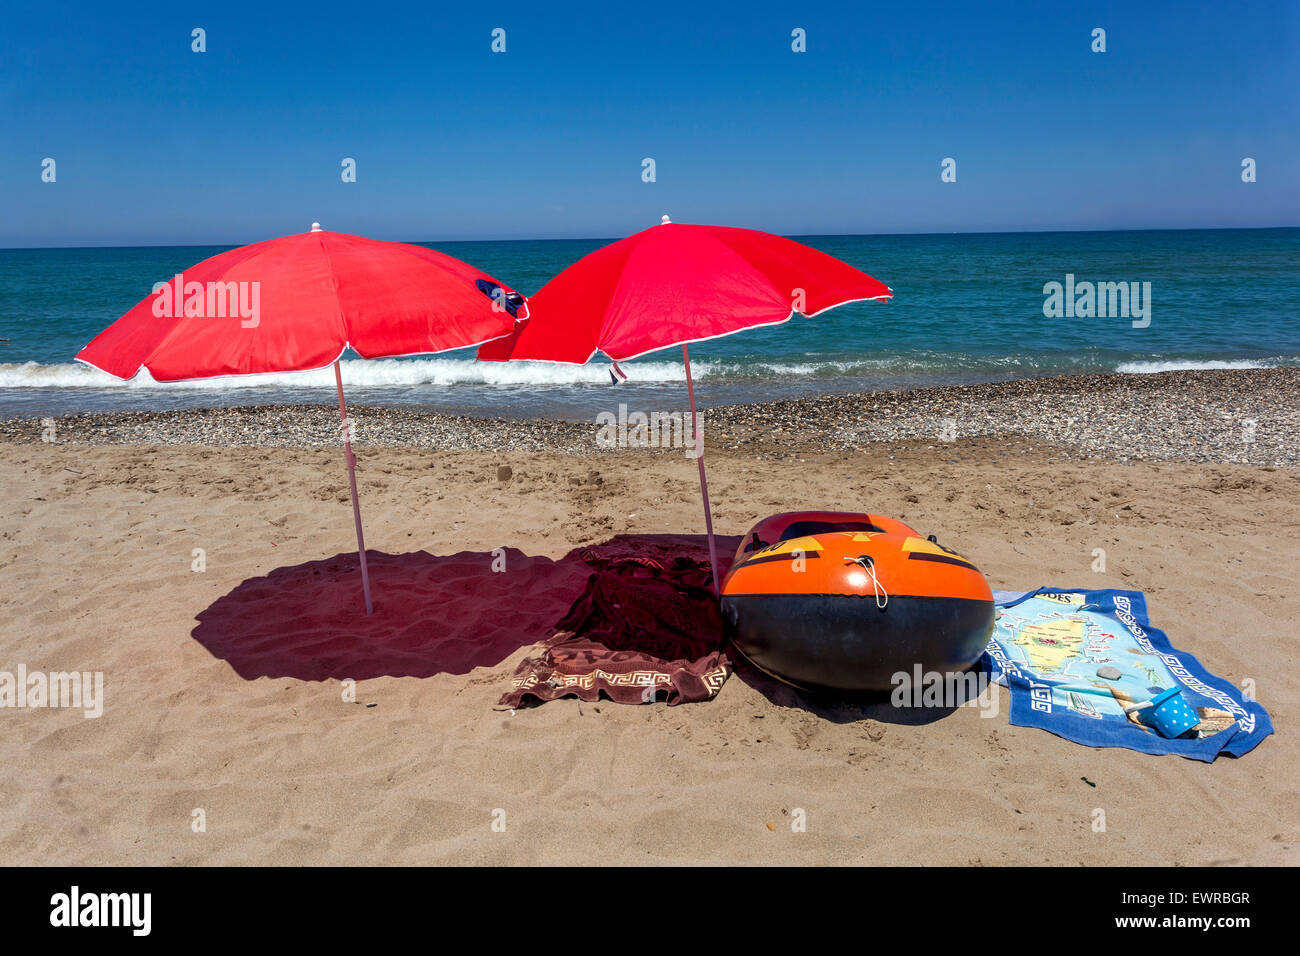 Deux parasols de plage rouges sur une plage de Réthymnon, Crète, Grèce parasols de plage jeter une ombre, encore la vie sur la plage bateau et serviettes gonflables, personne Banque D'Images